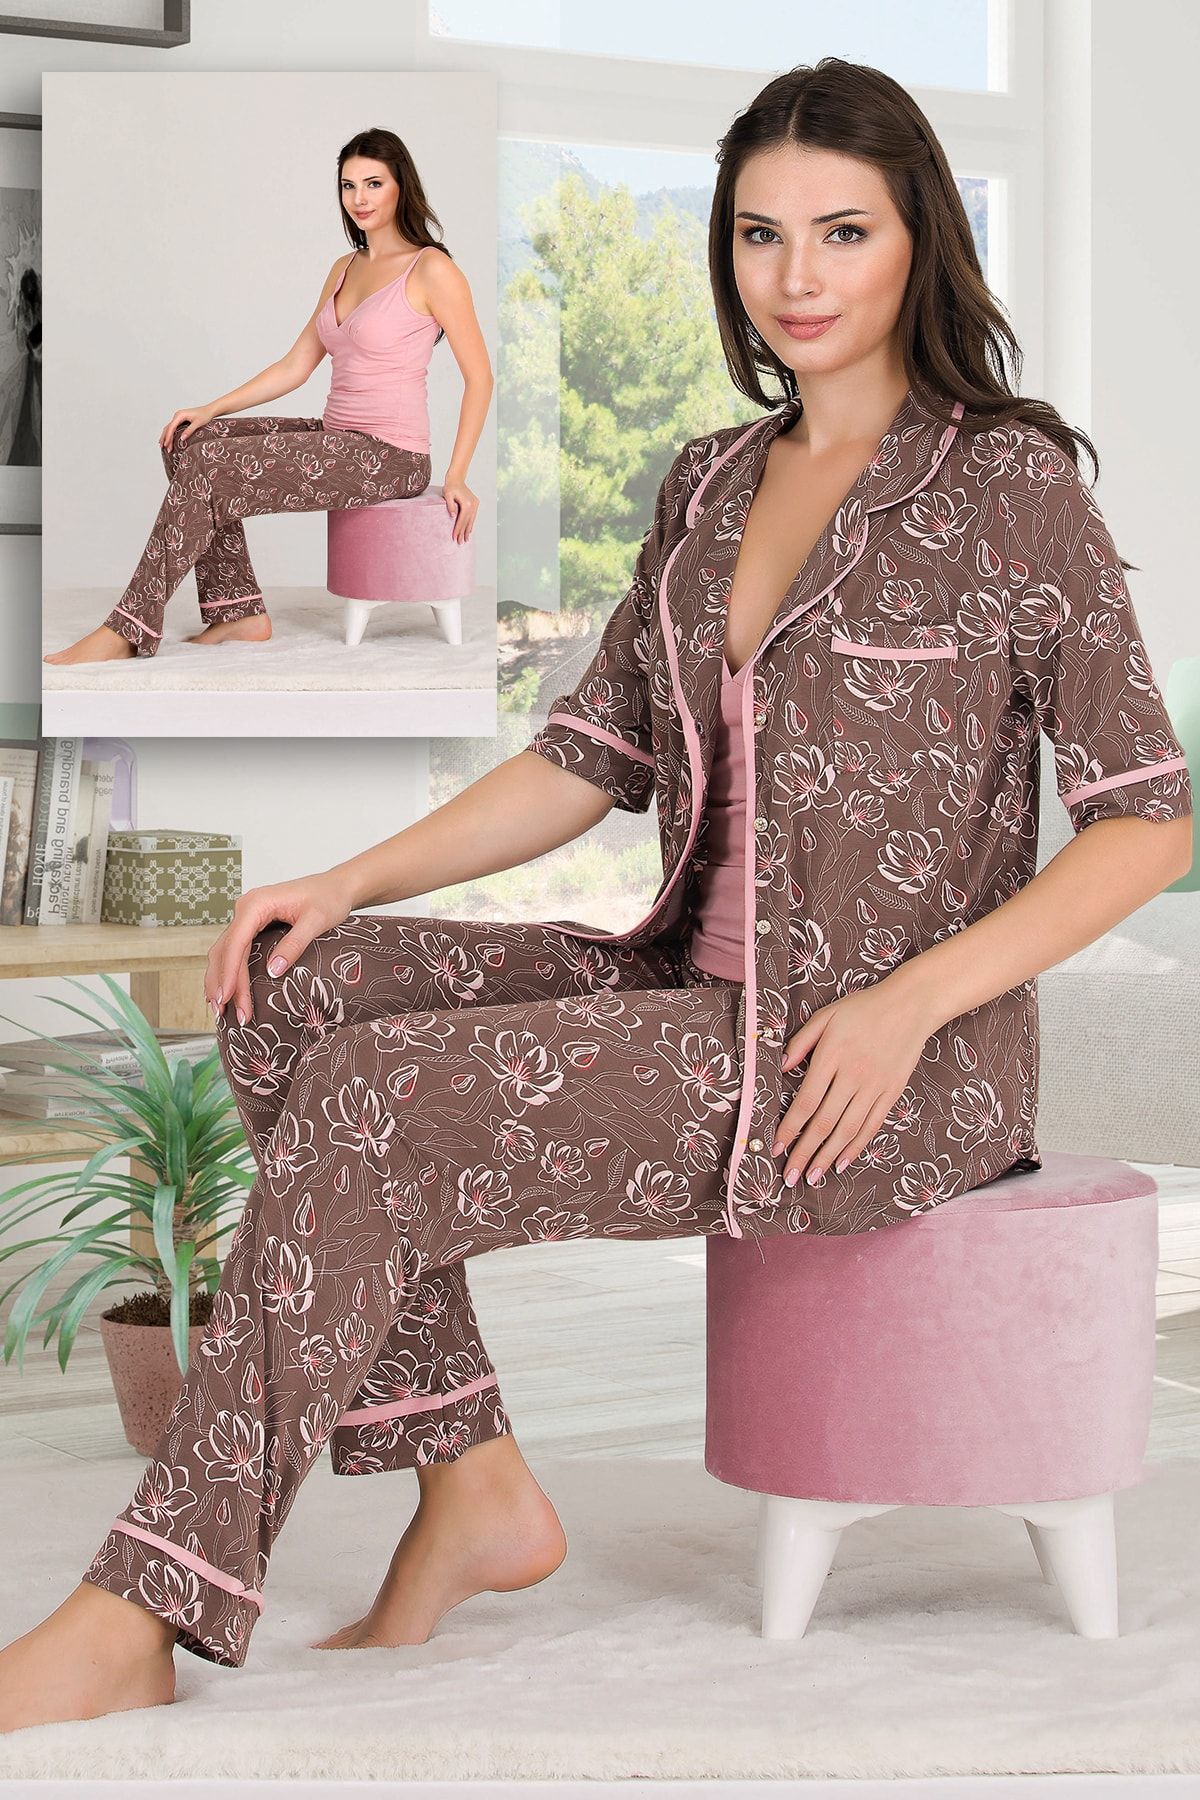 Jenny Daphne Lady Desenli Viskon Kumaş Kısa Kollu Gömlekli Ve Askılı 3 lü Pijama Takımı 20008